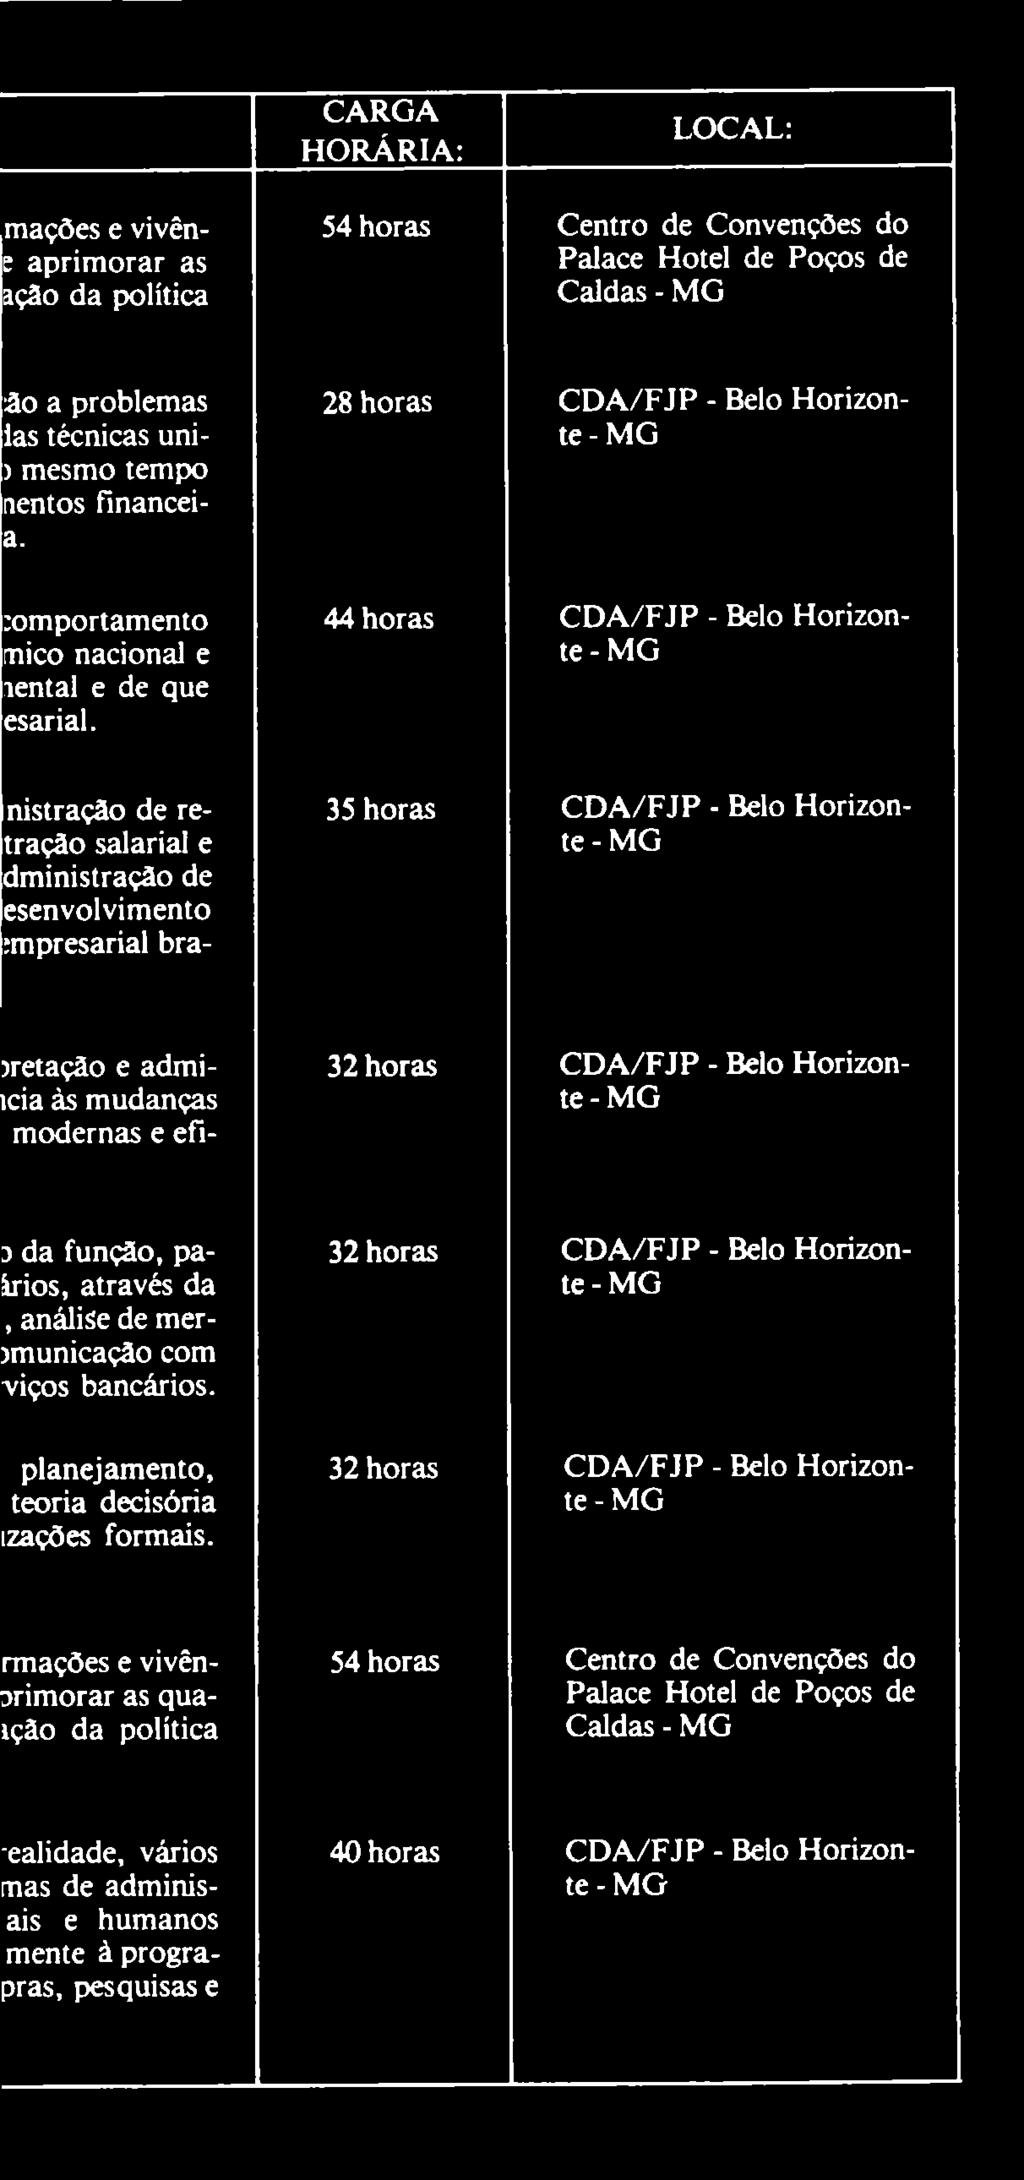 nistração de retração salarial e dministração de esenvolvimento :mpresarial bra- 28 horas CDA/FJP - Belo Horizonte 44 horas CDA/FJP - Belo Horizonte 35 horas CDA/FJP - Belo Horizonte jretação e